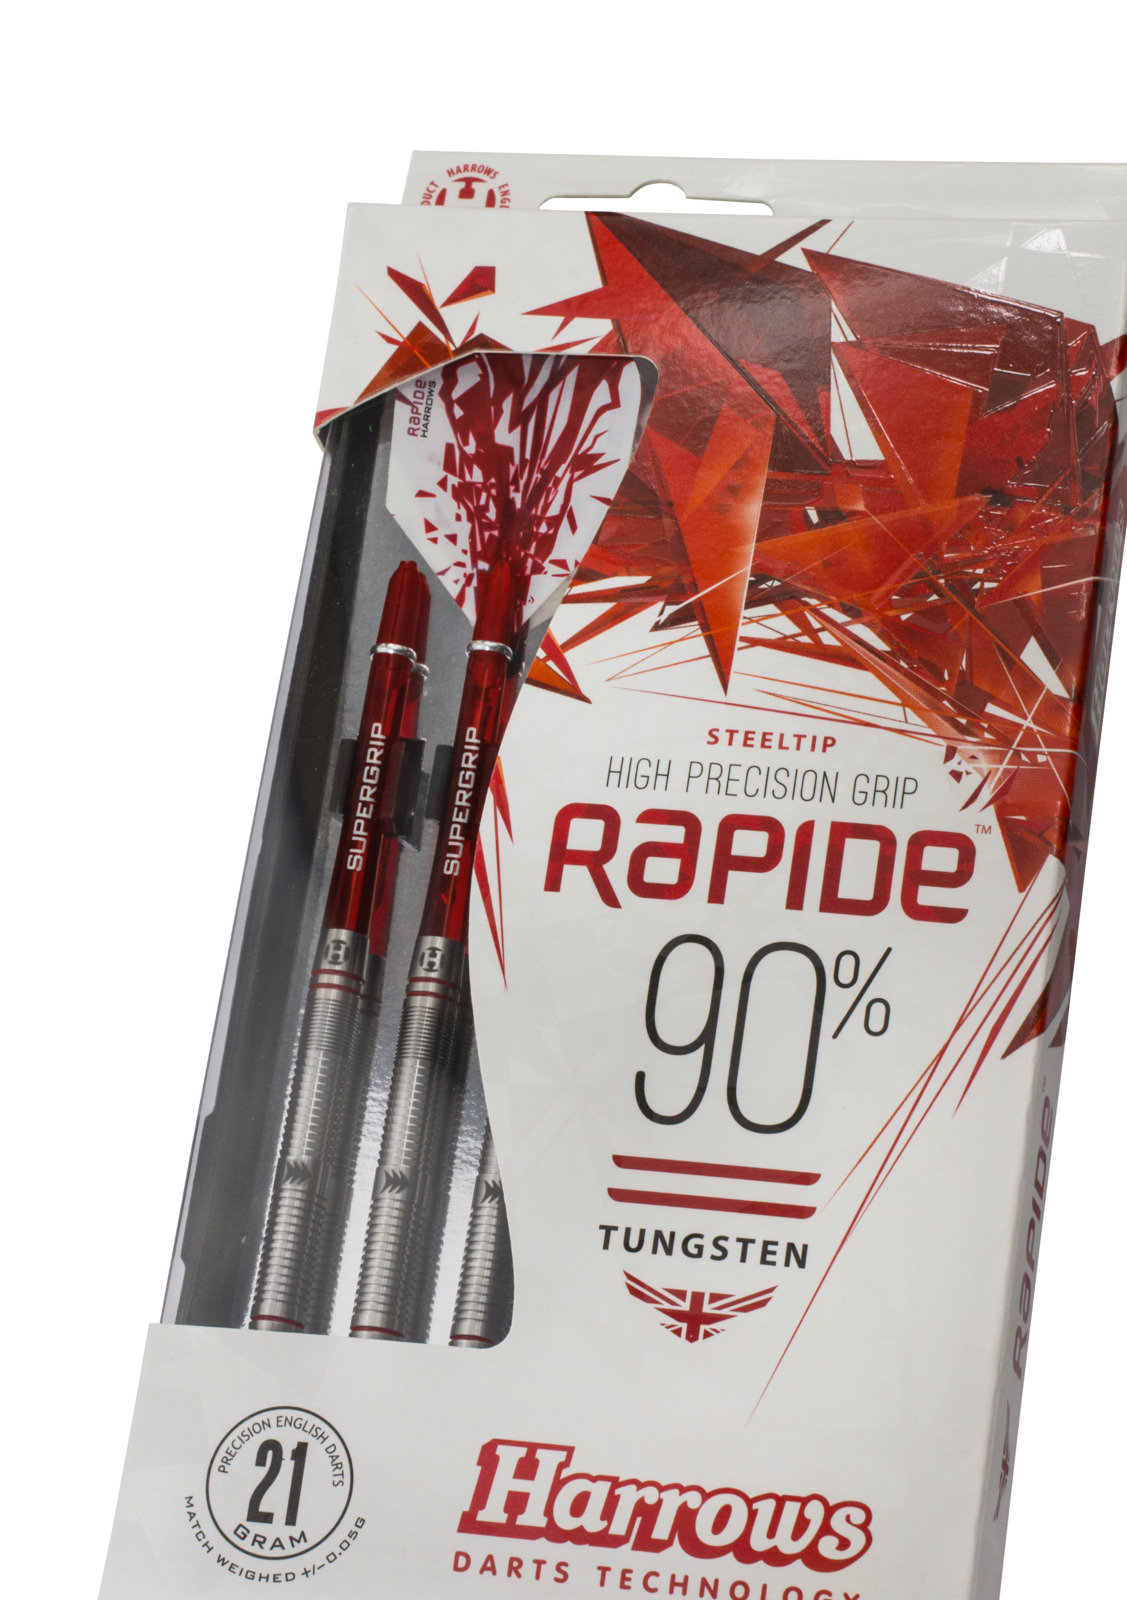 Harrows RAPIDE 90% Tungsten Darts 